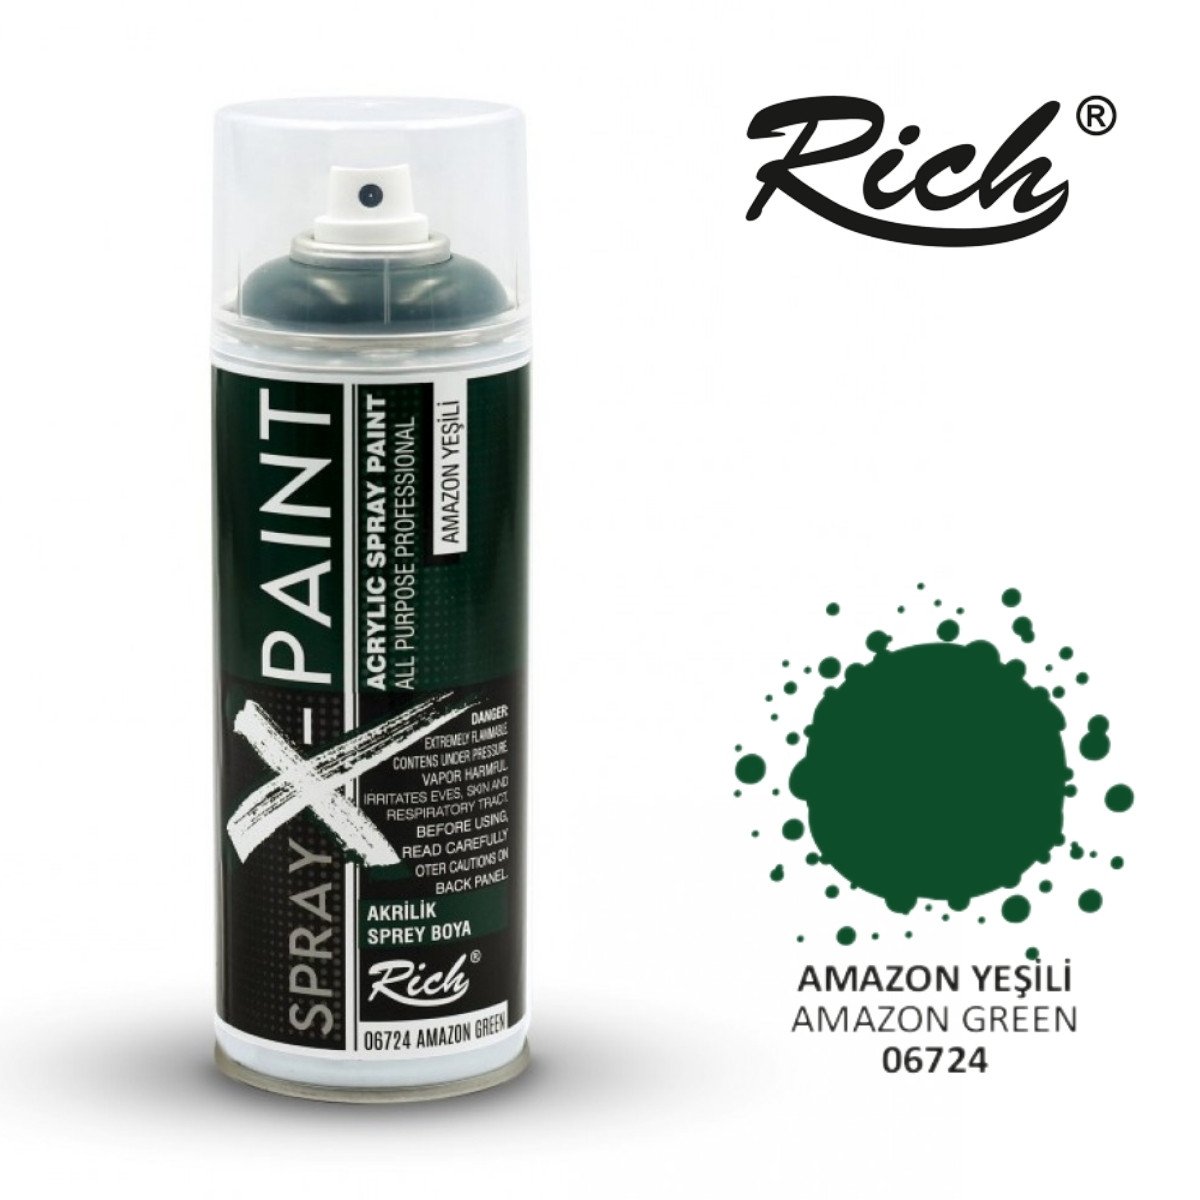 Rich X Paint Sprey Boya 400ml 06724 Amazon Yeşili